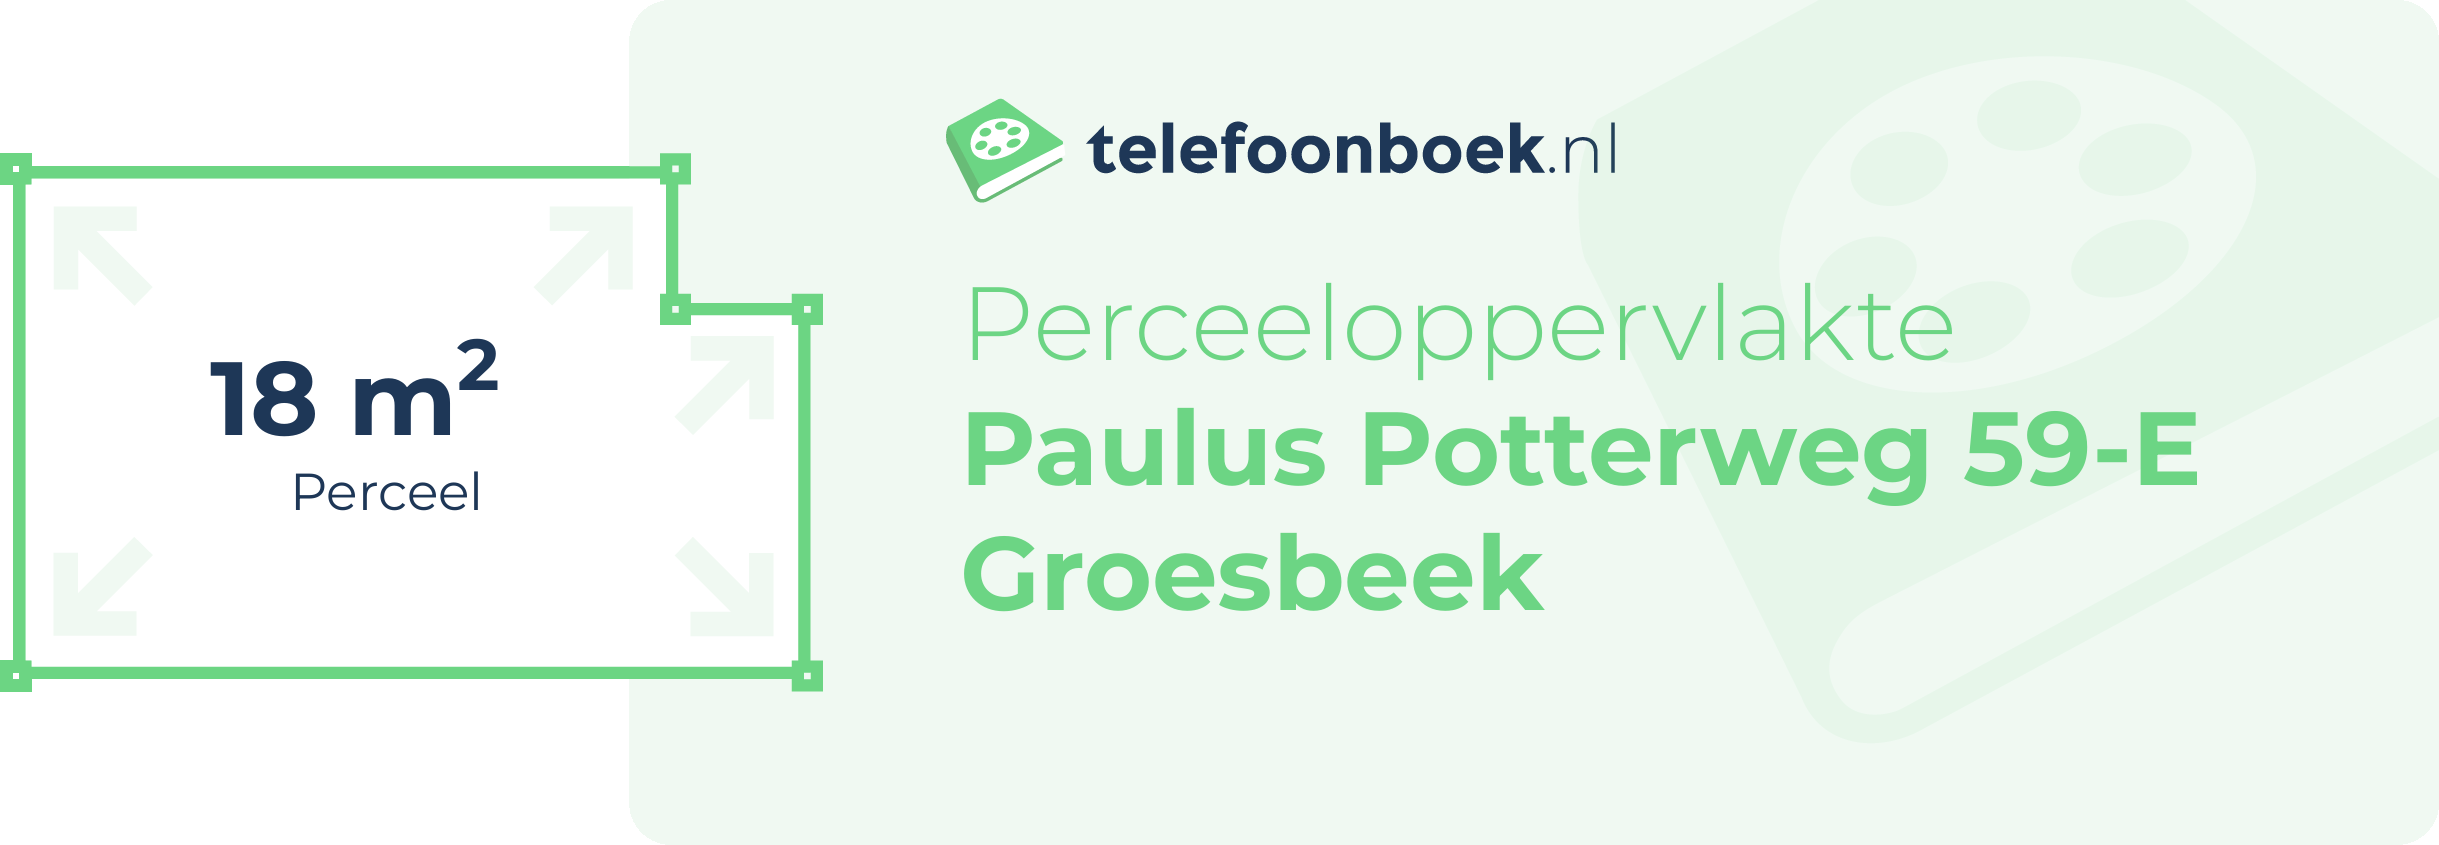 Perceeloppervlakte Paulus Potterweg 59-E Groesbeek